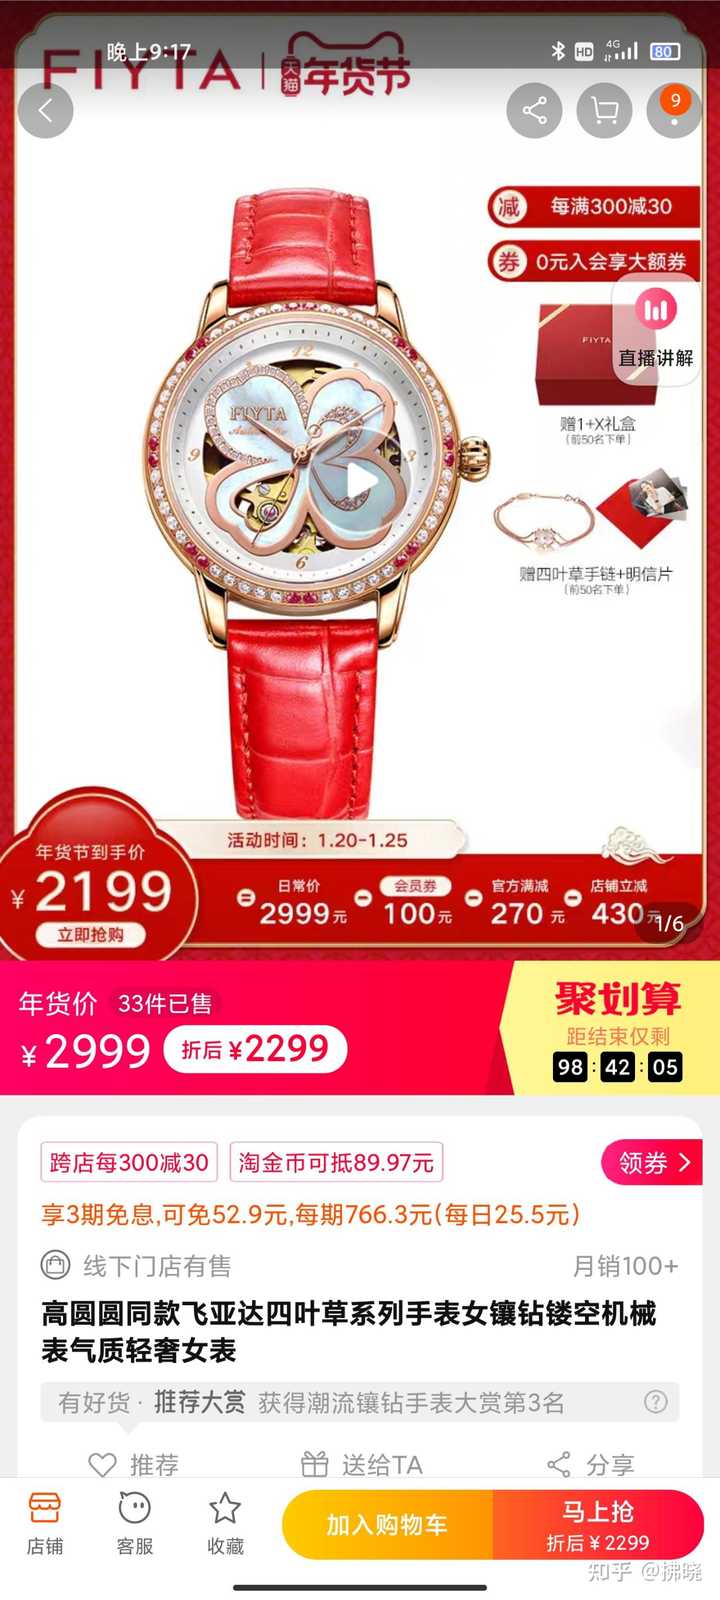 国产男士机械手表_国产机械手表品牌排行榜前十名_国产机械手表哪个牌子好